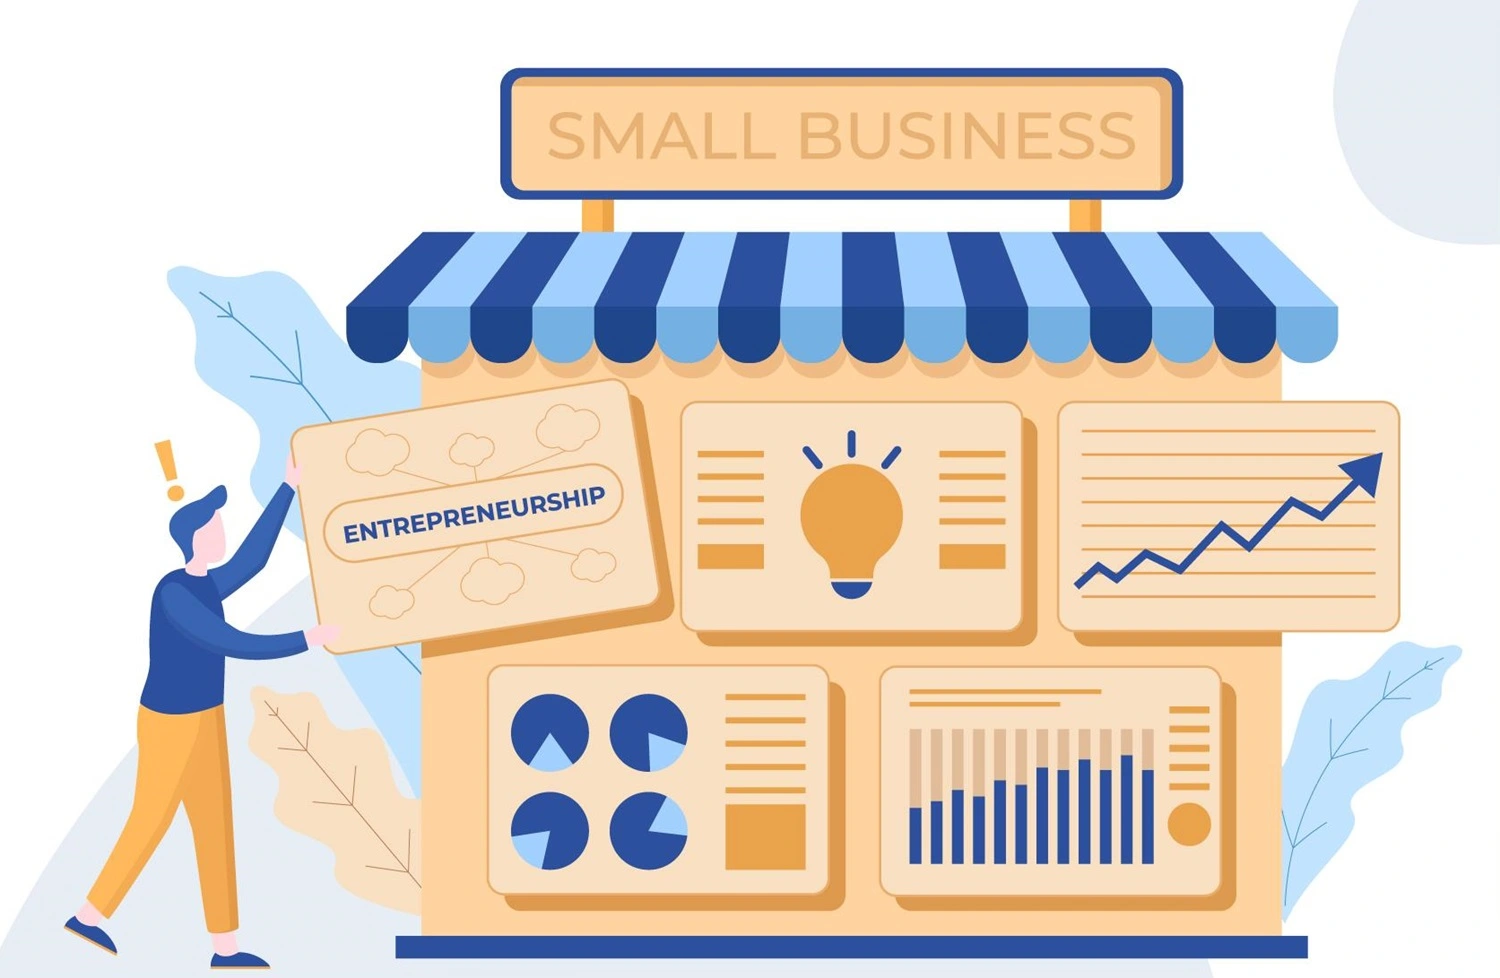 Strategi Small Business Marketing dalam Meningkatkan Visibilitas